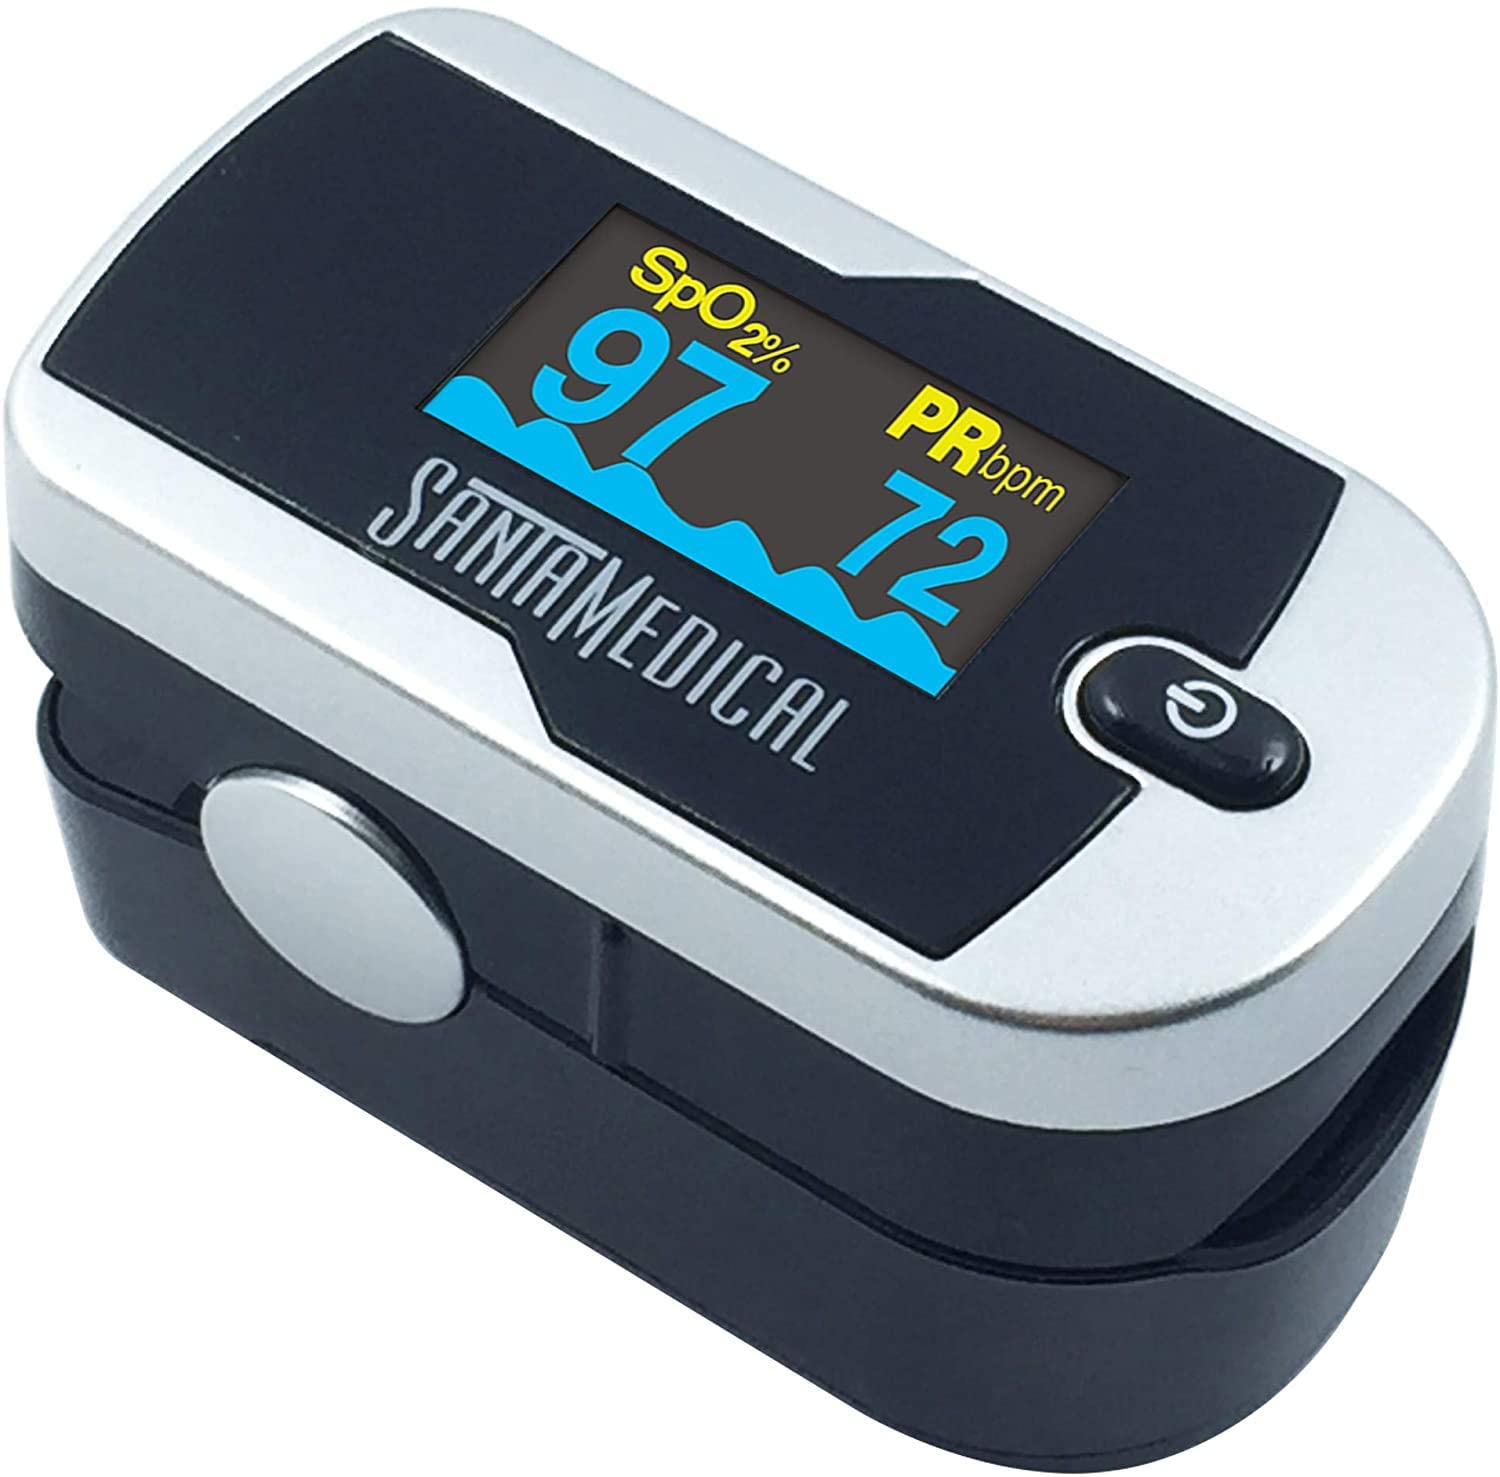 Santamedical Generation 2 Fingertip Pulse Oximeter Review